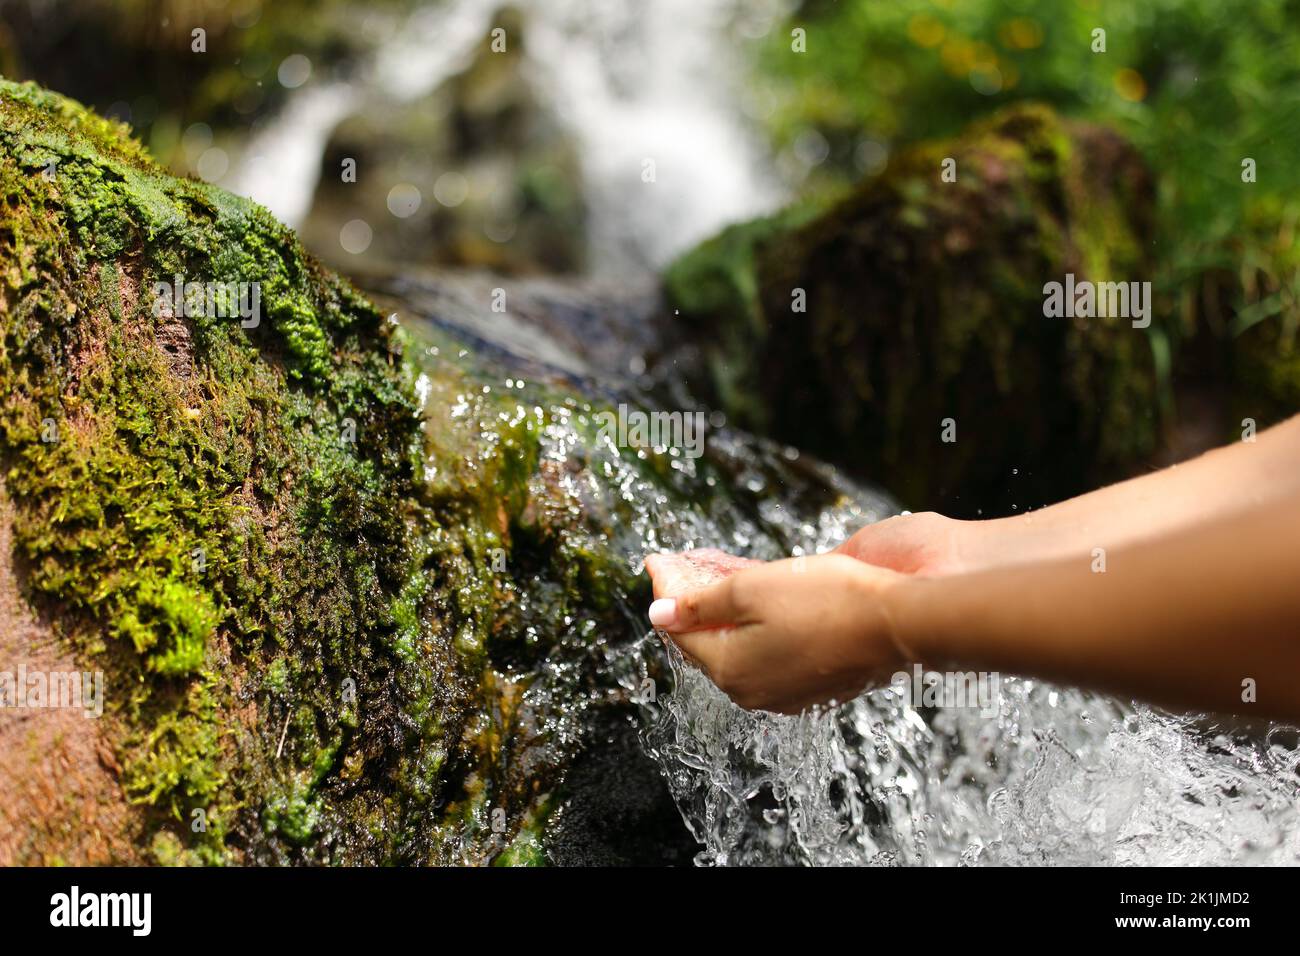 Primo piano ritratto di una donna mani in una cascata che cattura l'acqua non trattata Foto Stock